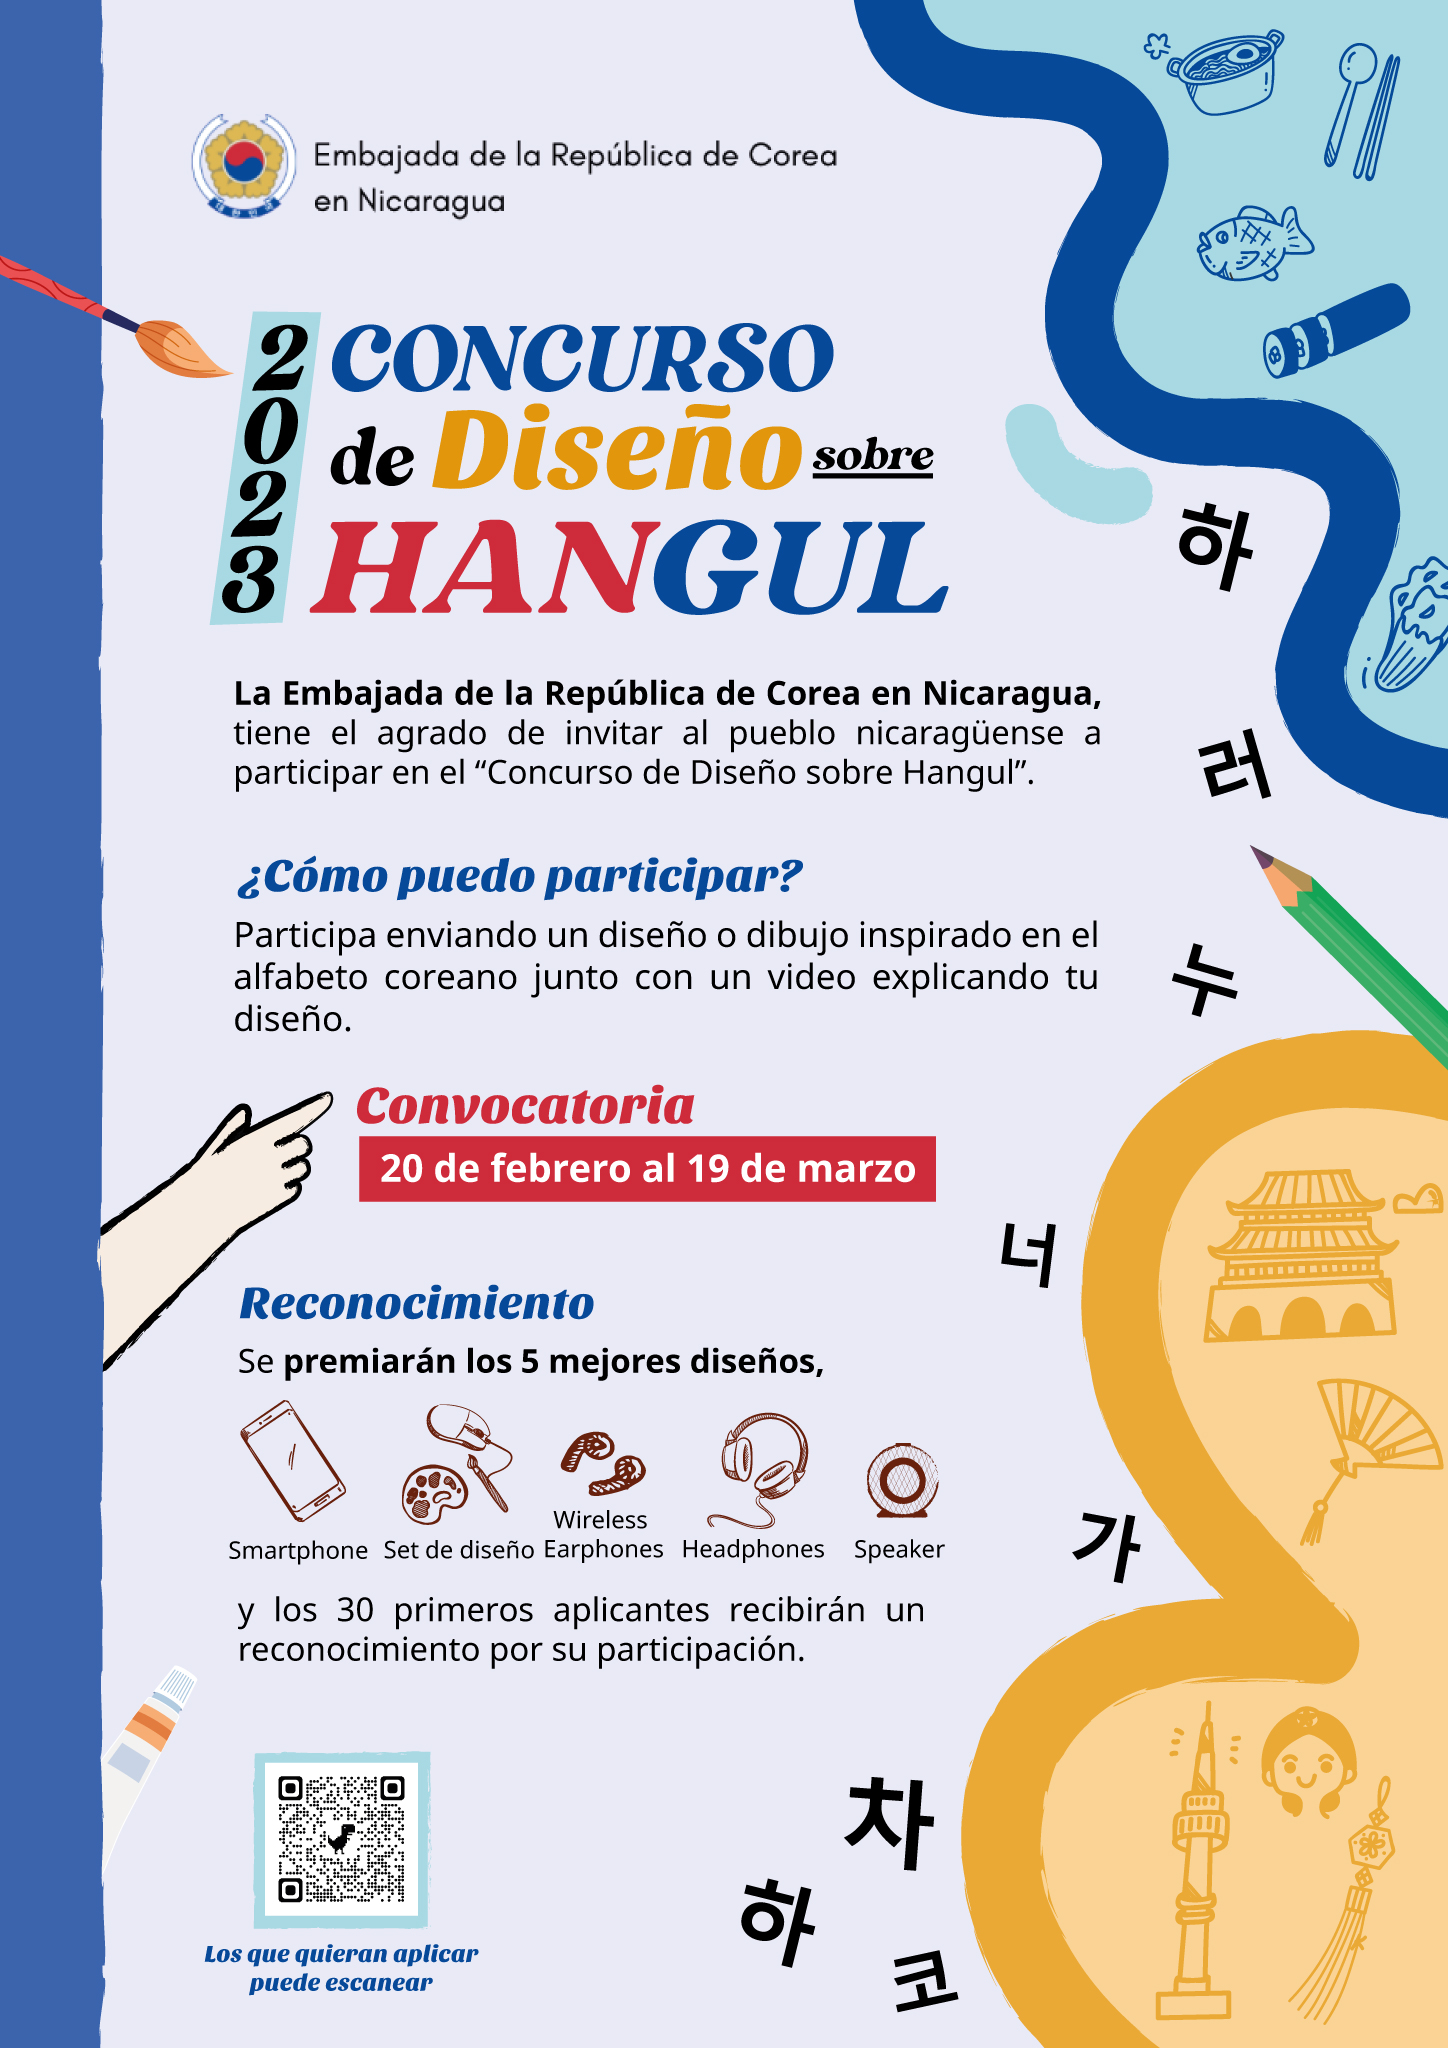 Embajada de Corea en Nicaragua realizará un concurso de diseño de Hangul